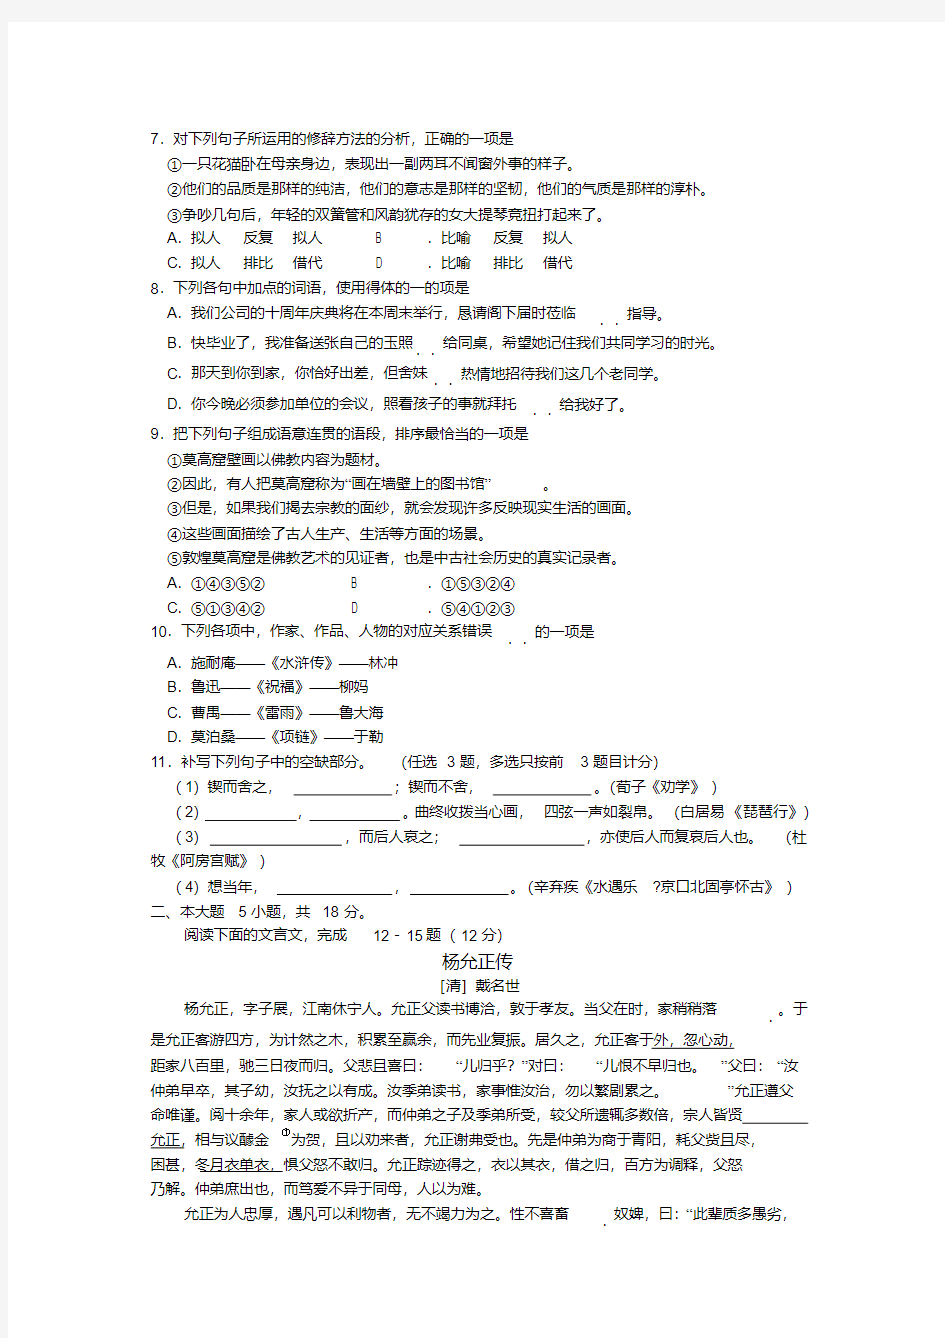 2019年广东省普通高中学业水平考试(春季高考)语文真题试卷及答案1(20200520190419)